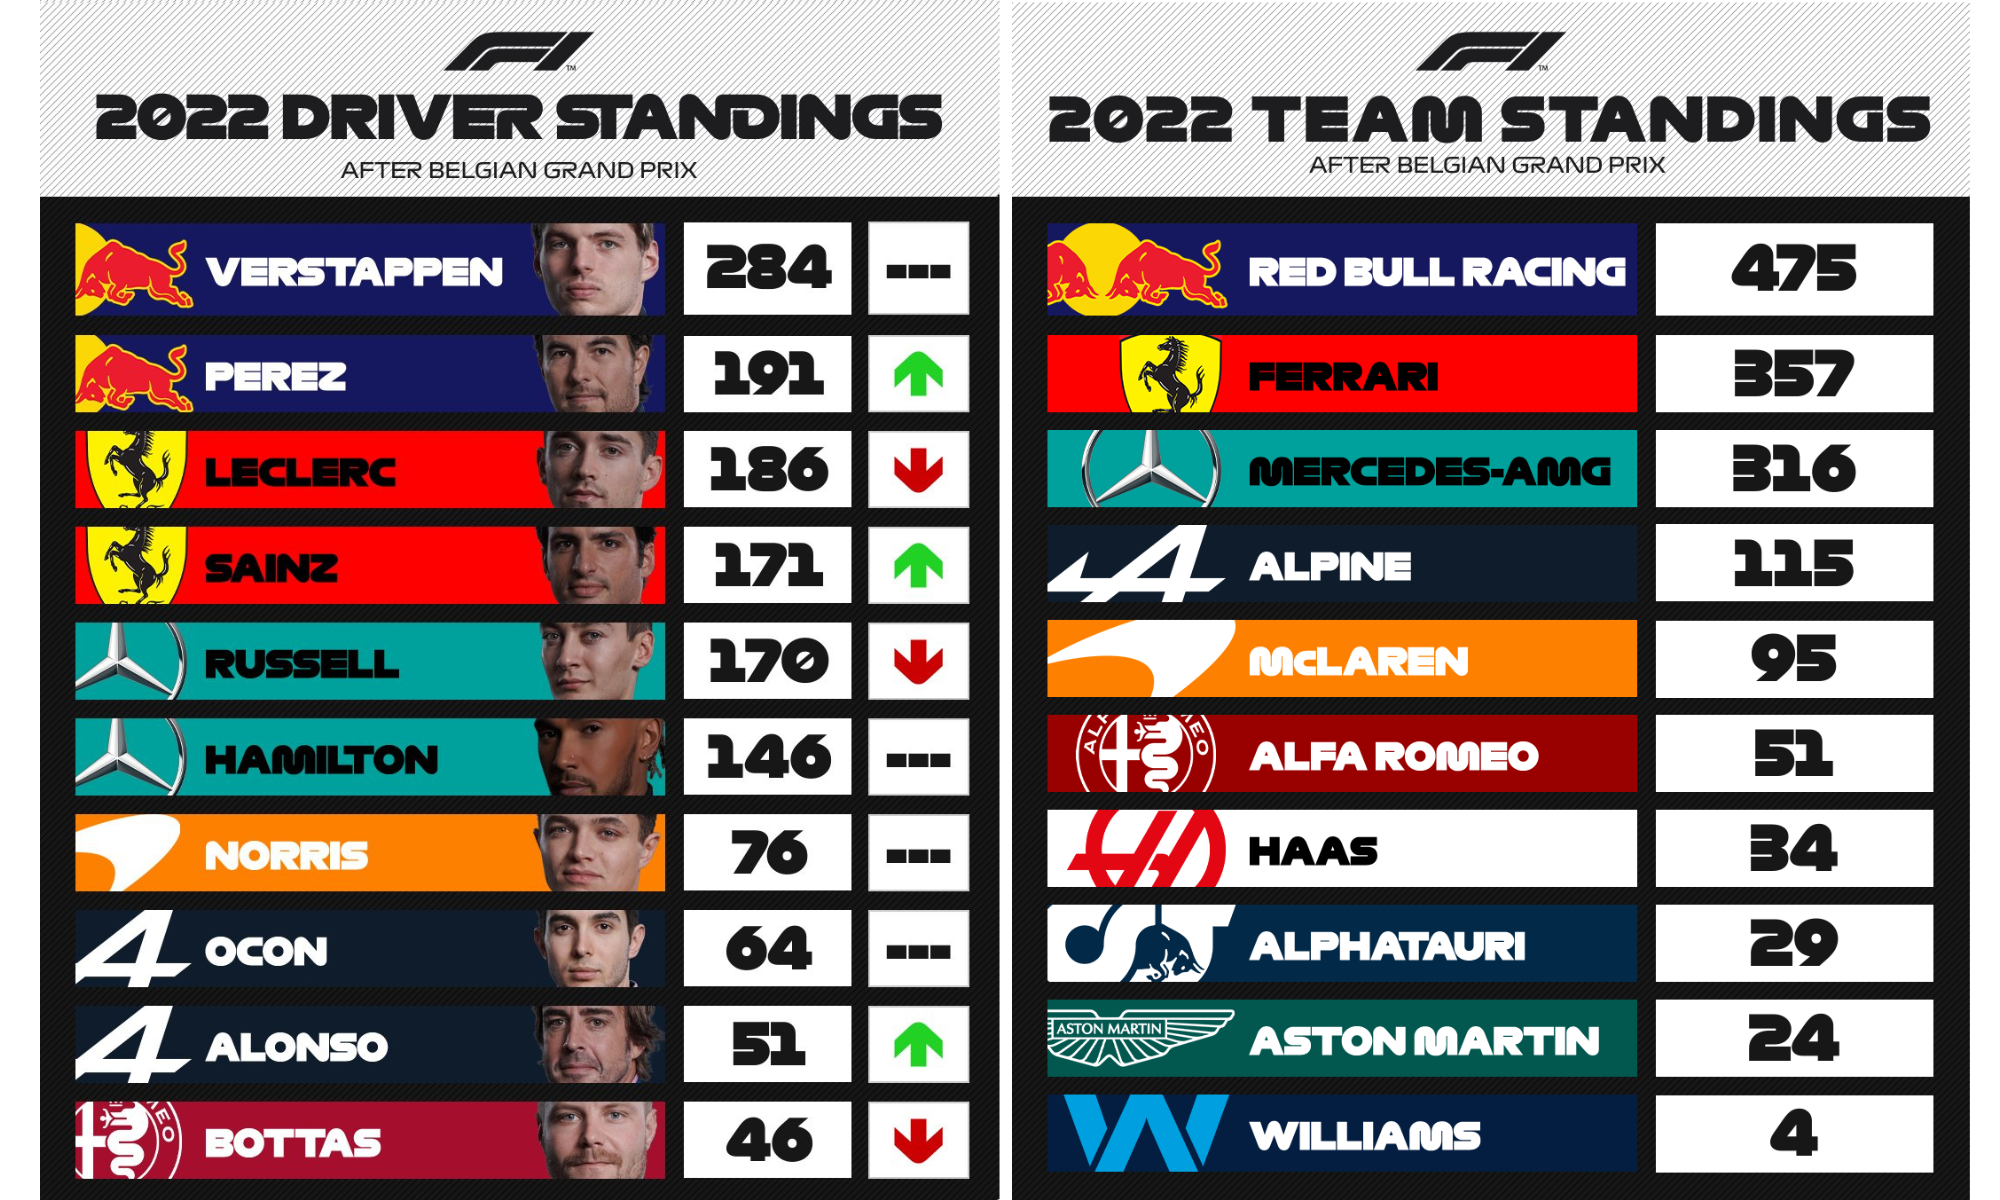 Tabelas dos campeonatos de equipe e pilotos. Divulgação: F1.